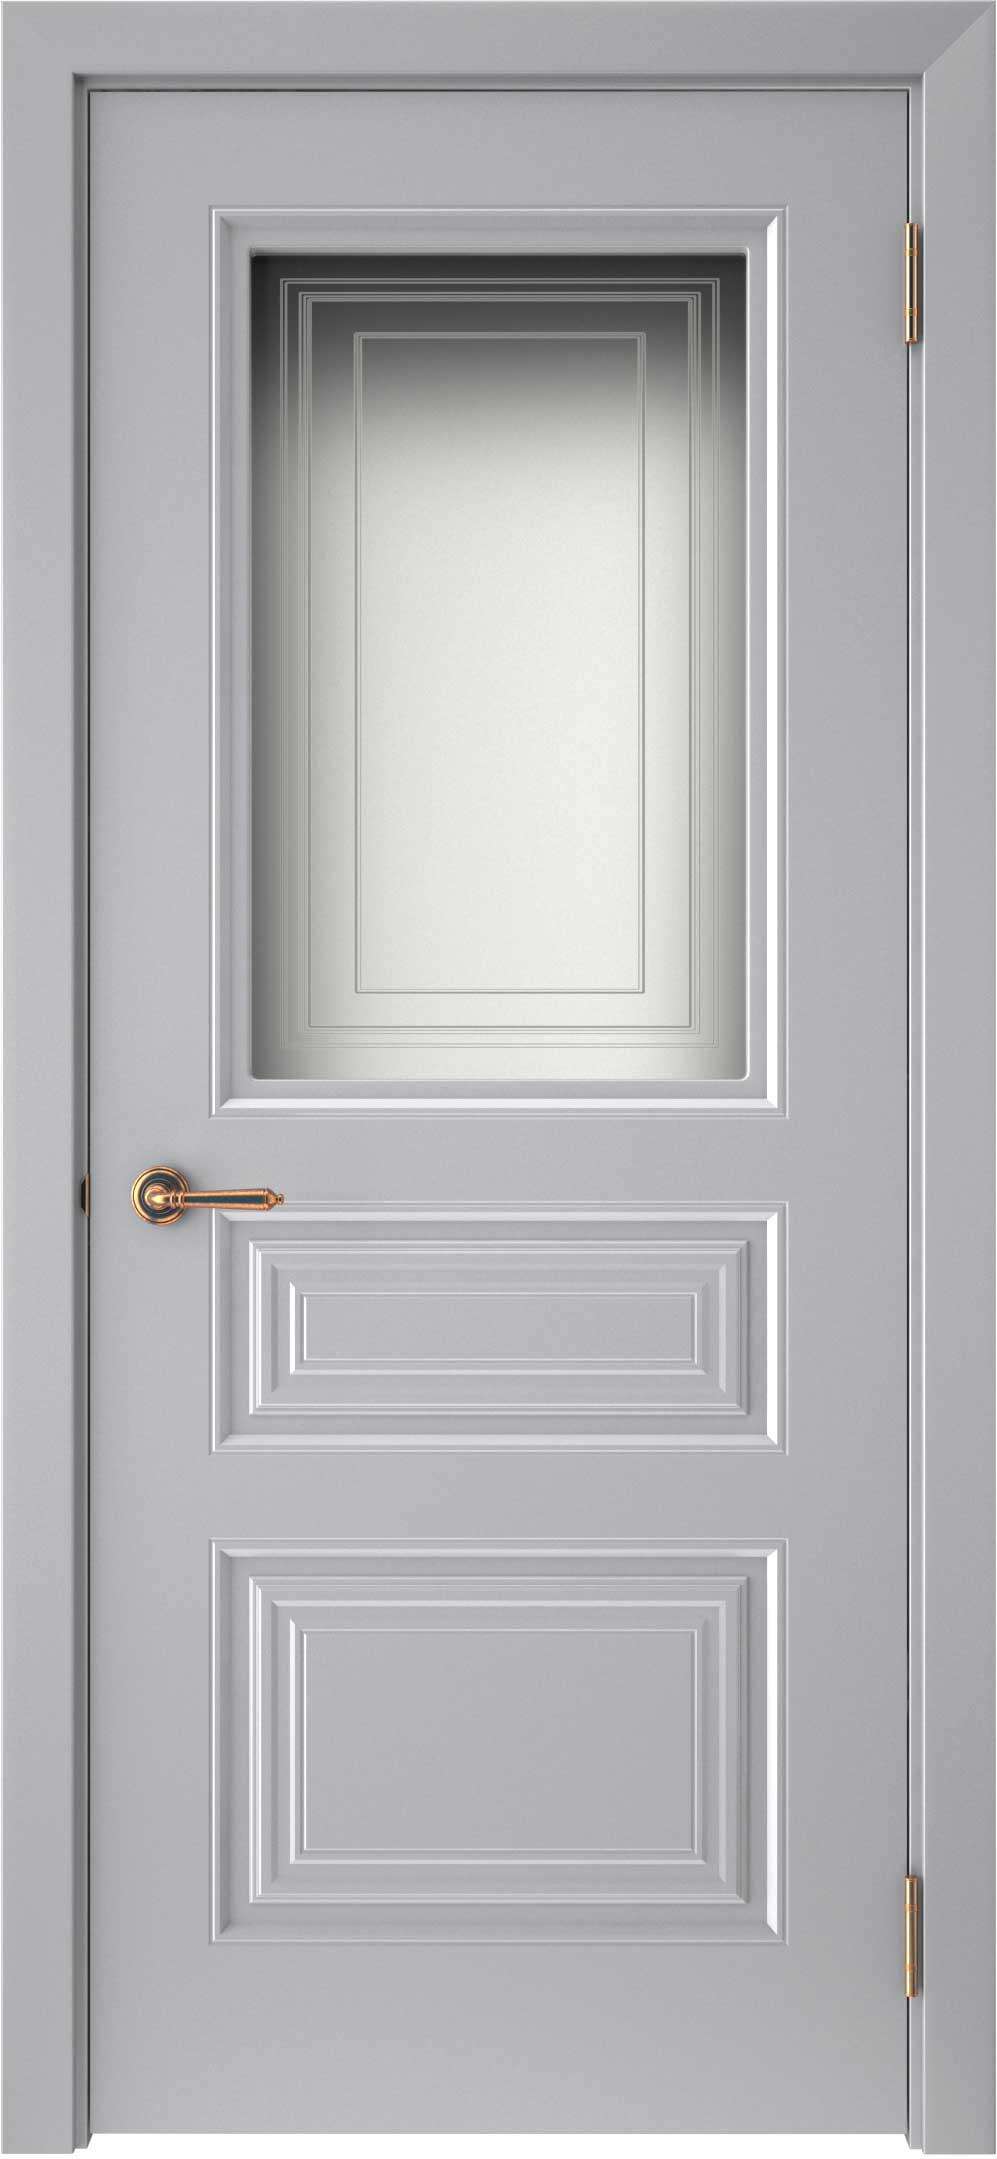 Двери крашеные (Эмаль) ТЕКОНА Смальта-44 со стеклом Серый ral размер 200 х 60 см. артикул F0000093311